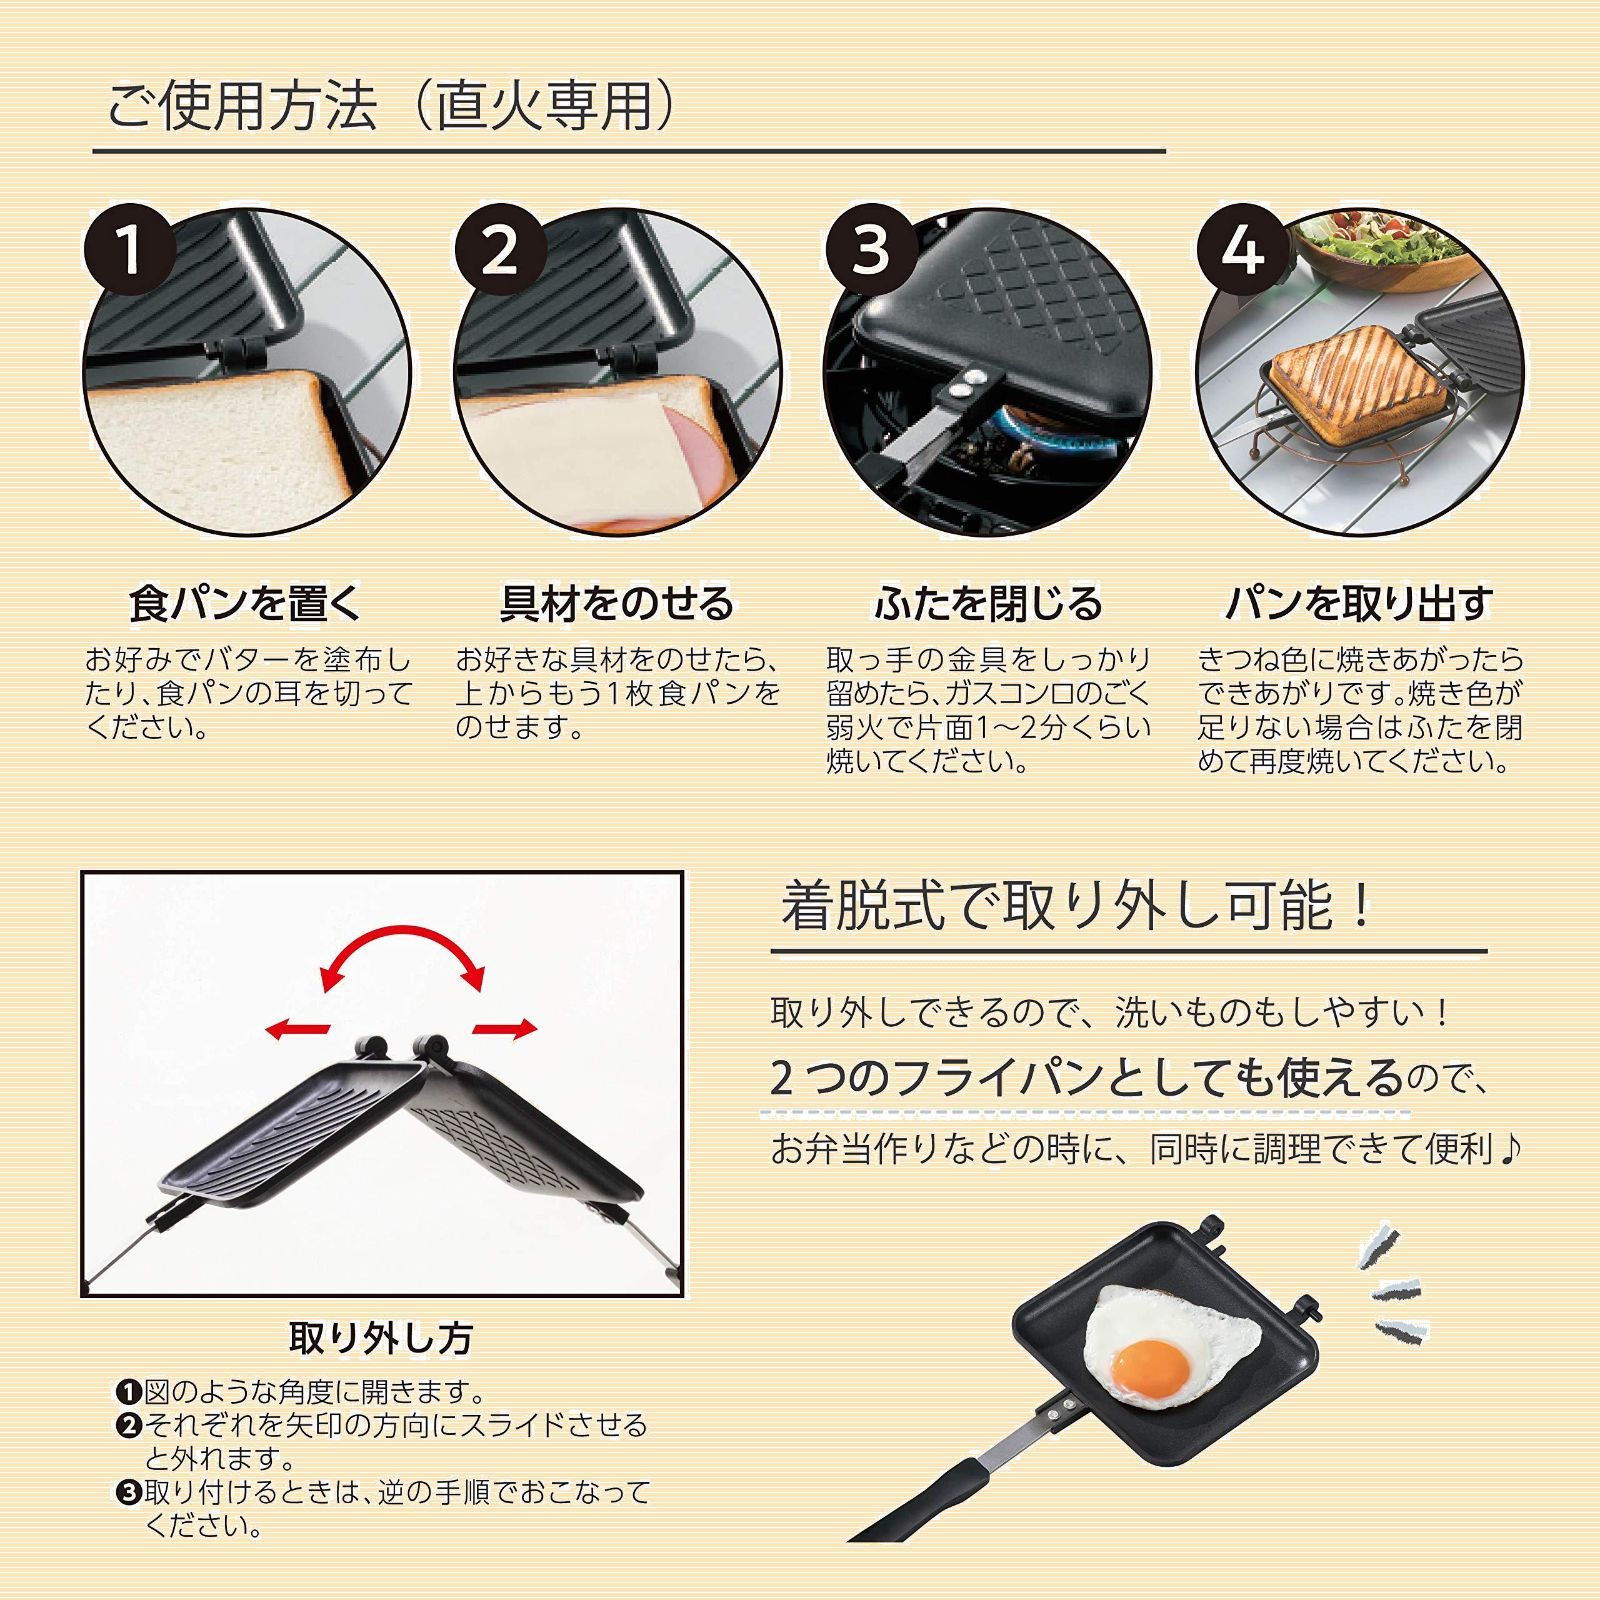 特価商品武田コーポレーション 直火式ホットサンドメーカー ブラック